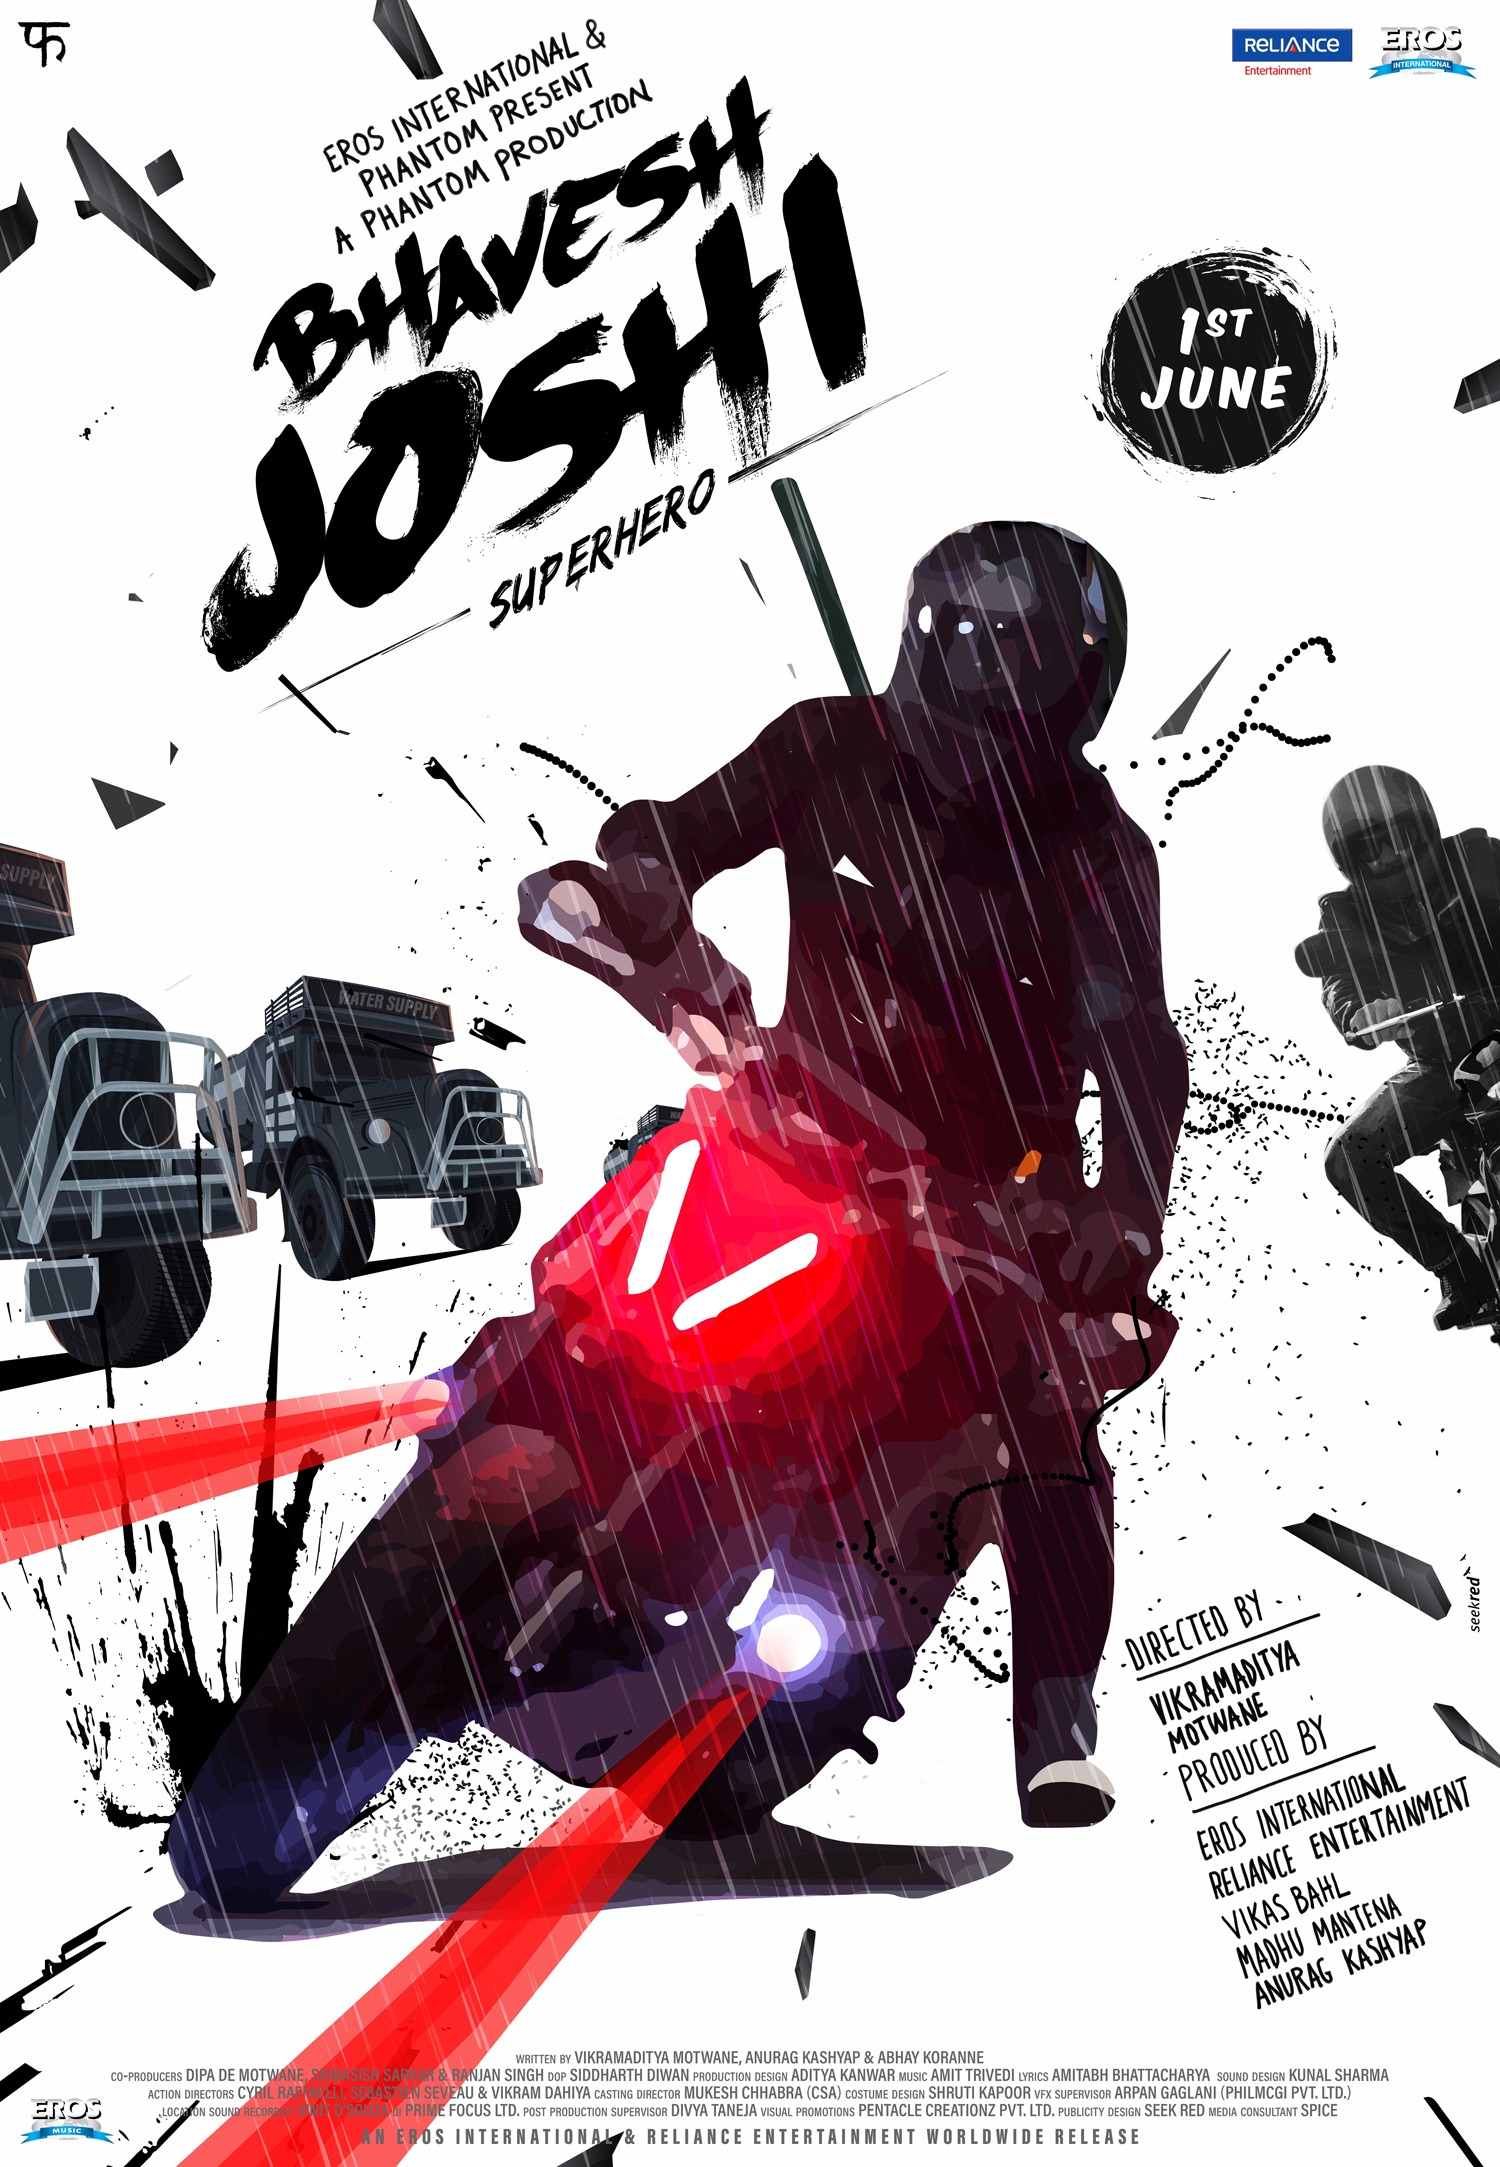 Bhavesh Joshi Superhero - Bike poster #SeekRed